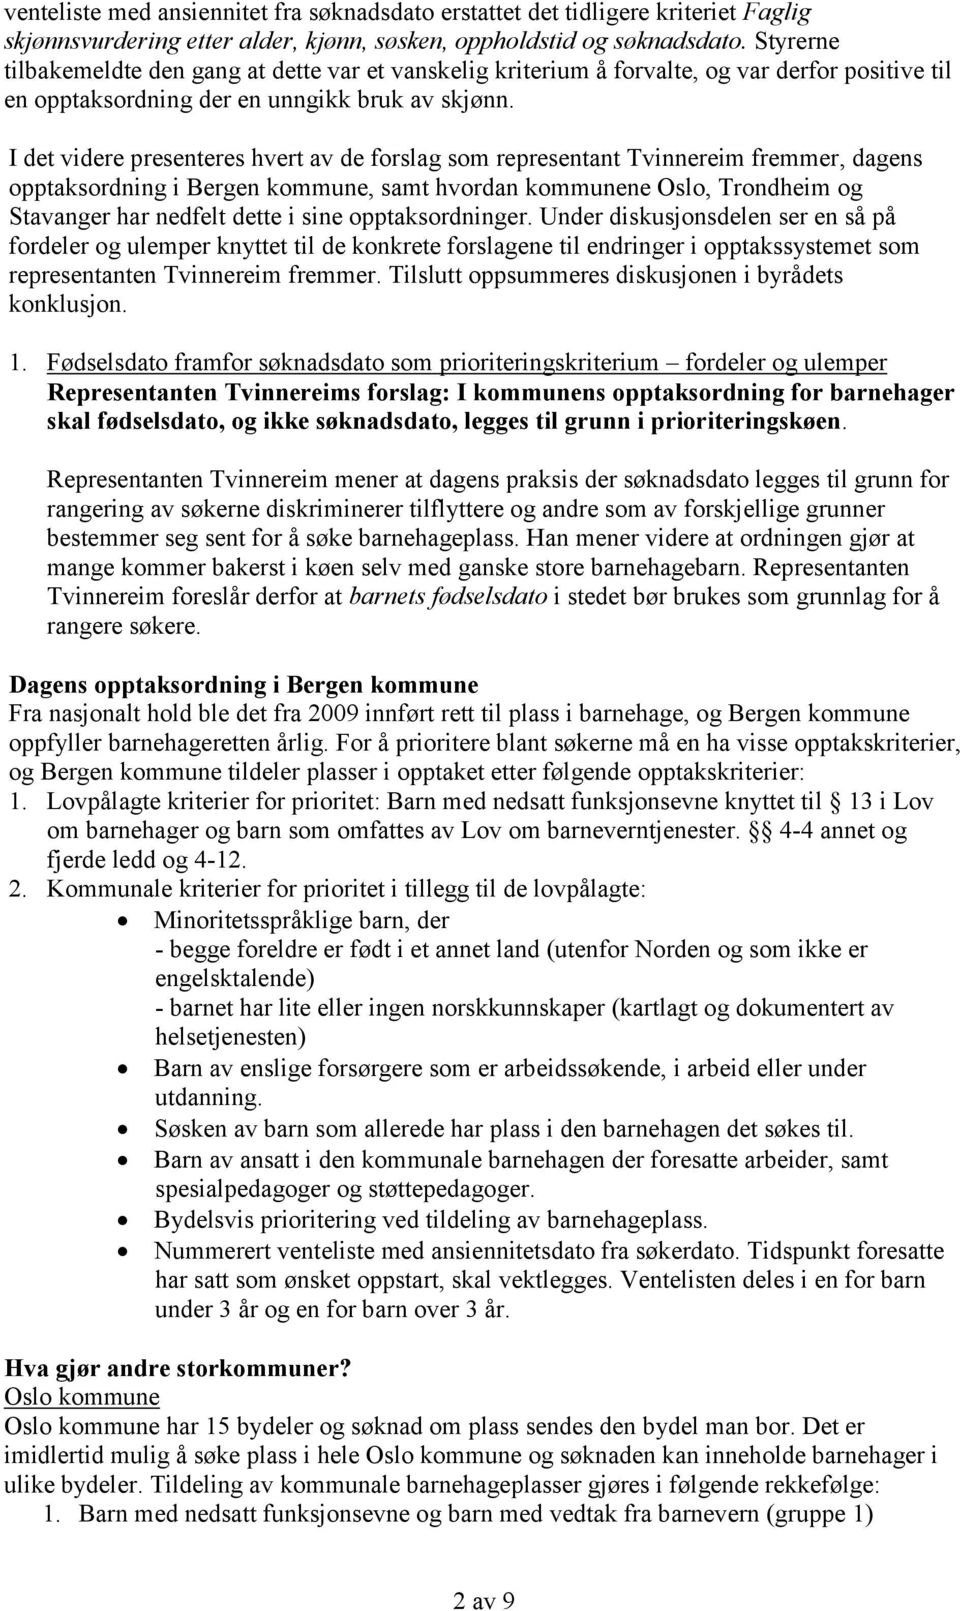 I det videre presenteres hvert av de forslag som representant Tvinnereim fremmer, dagens opptaksordning i Bergen kommune, samt hvordan kommunene Oslo, Trondheim og Stavanger har nedfelt dette i sine